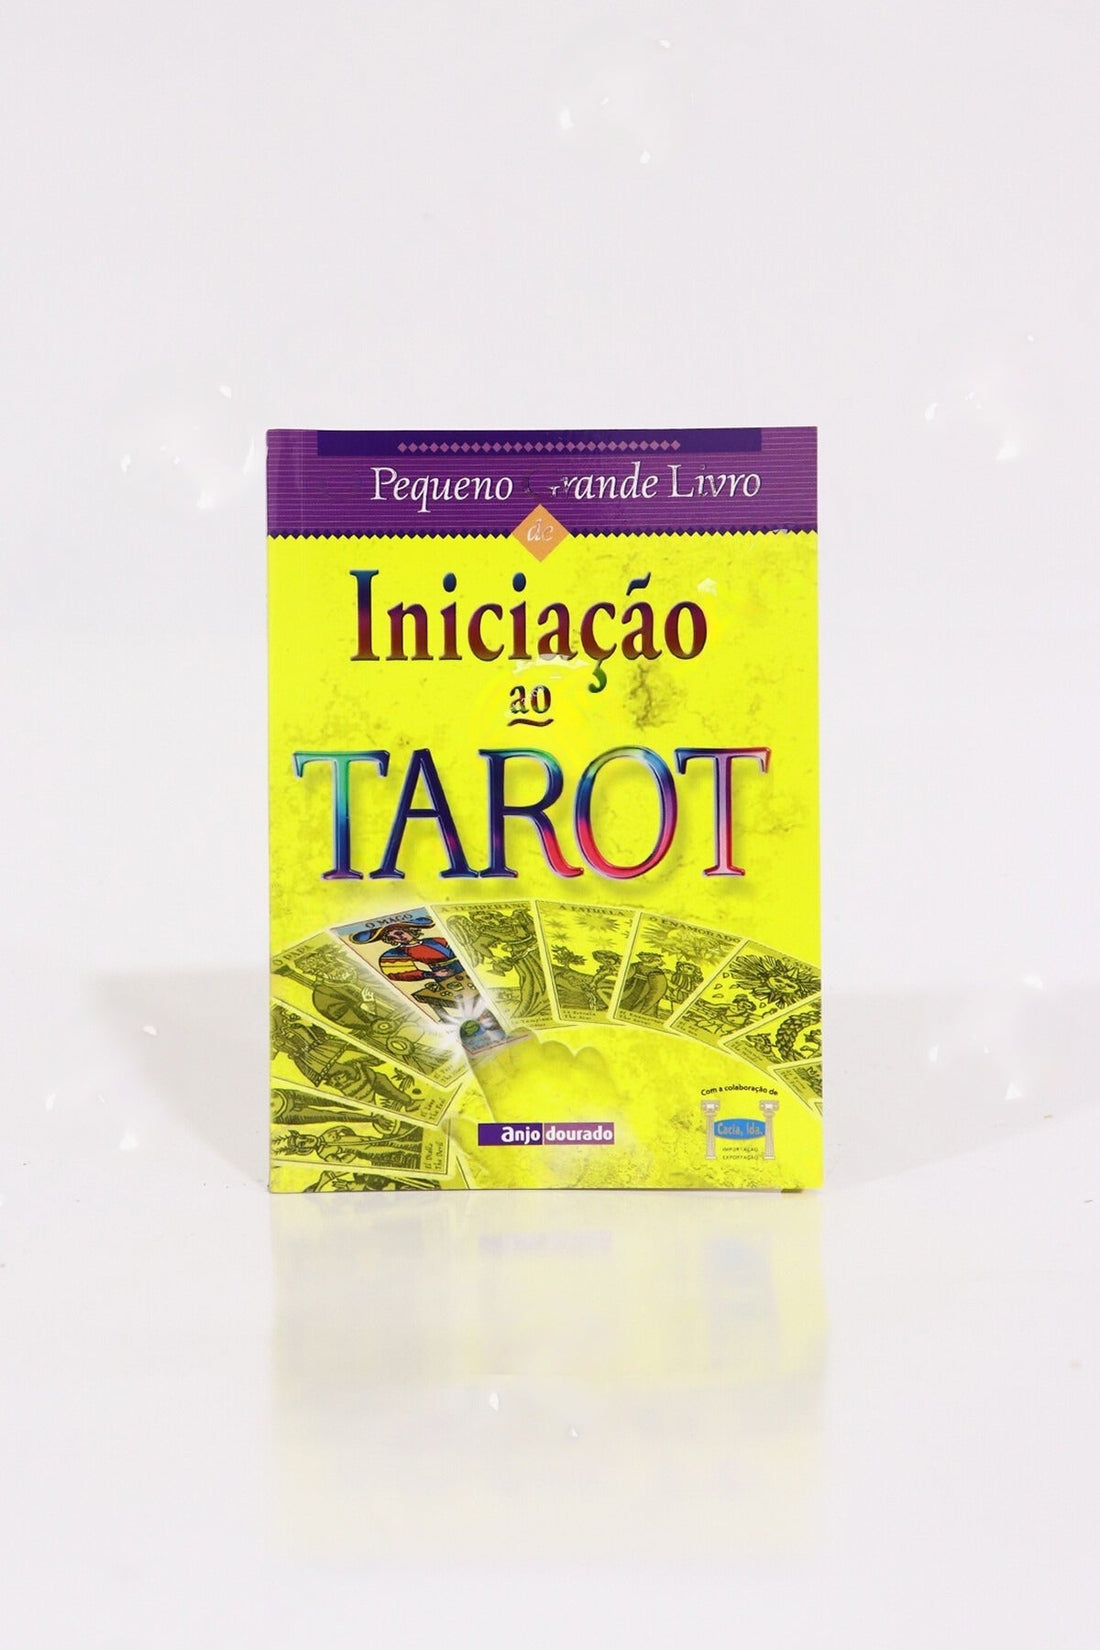 O Pequeno Grande Livro de Iniciação ao Tarot